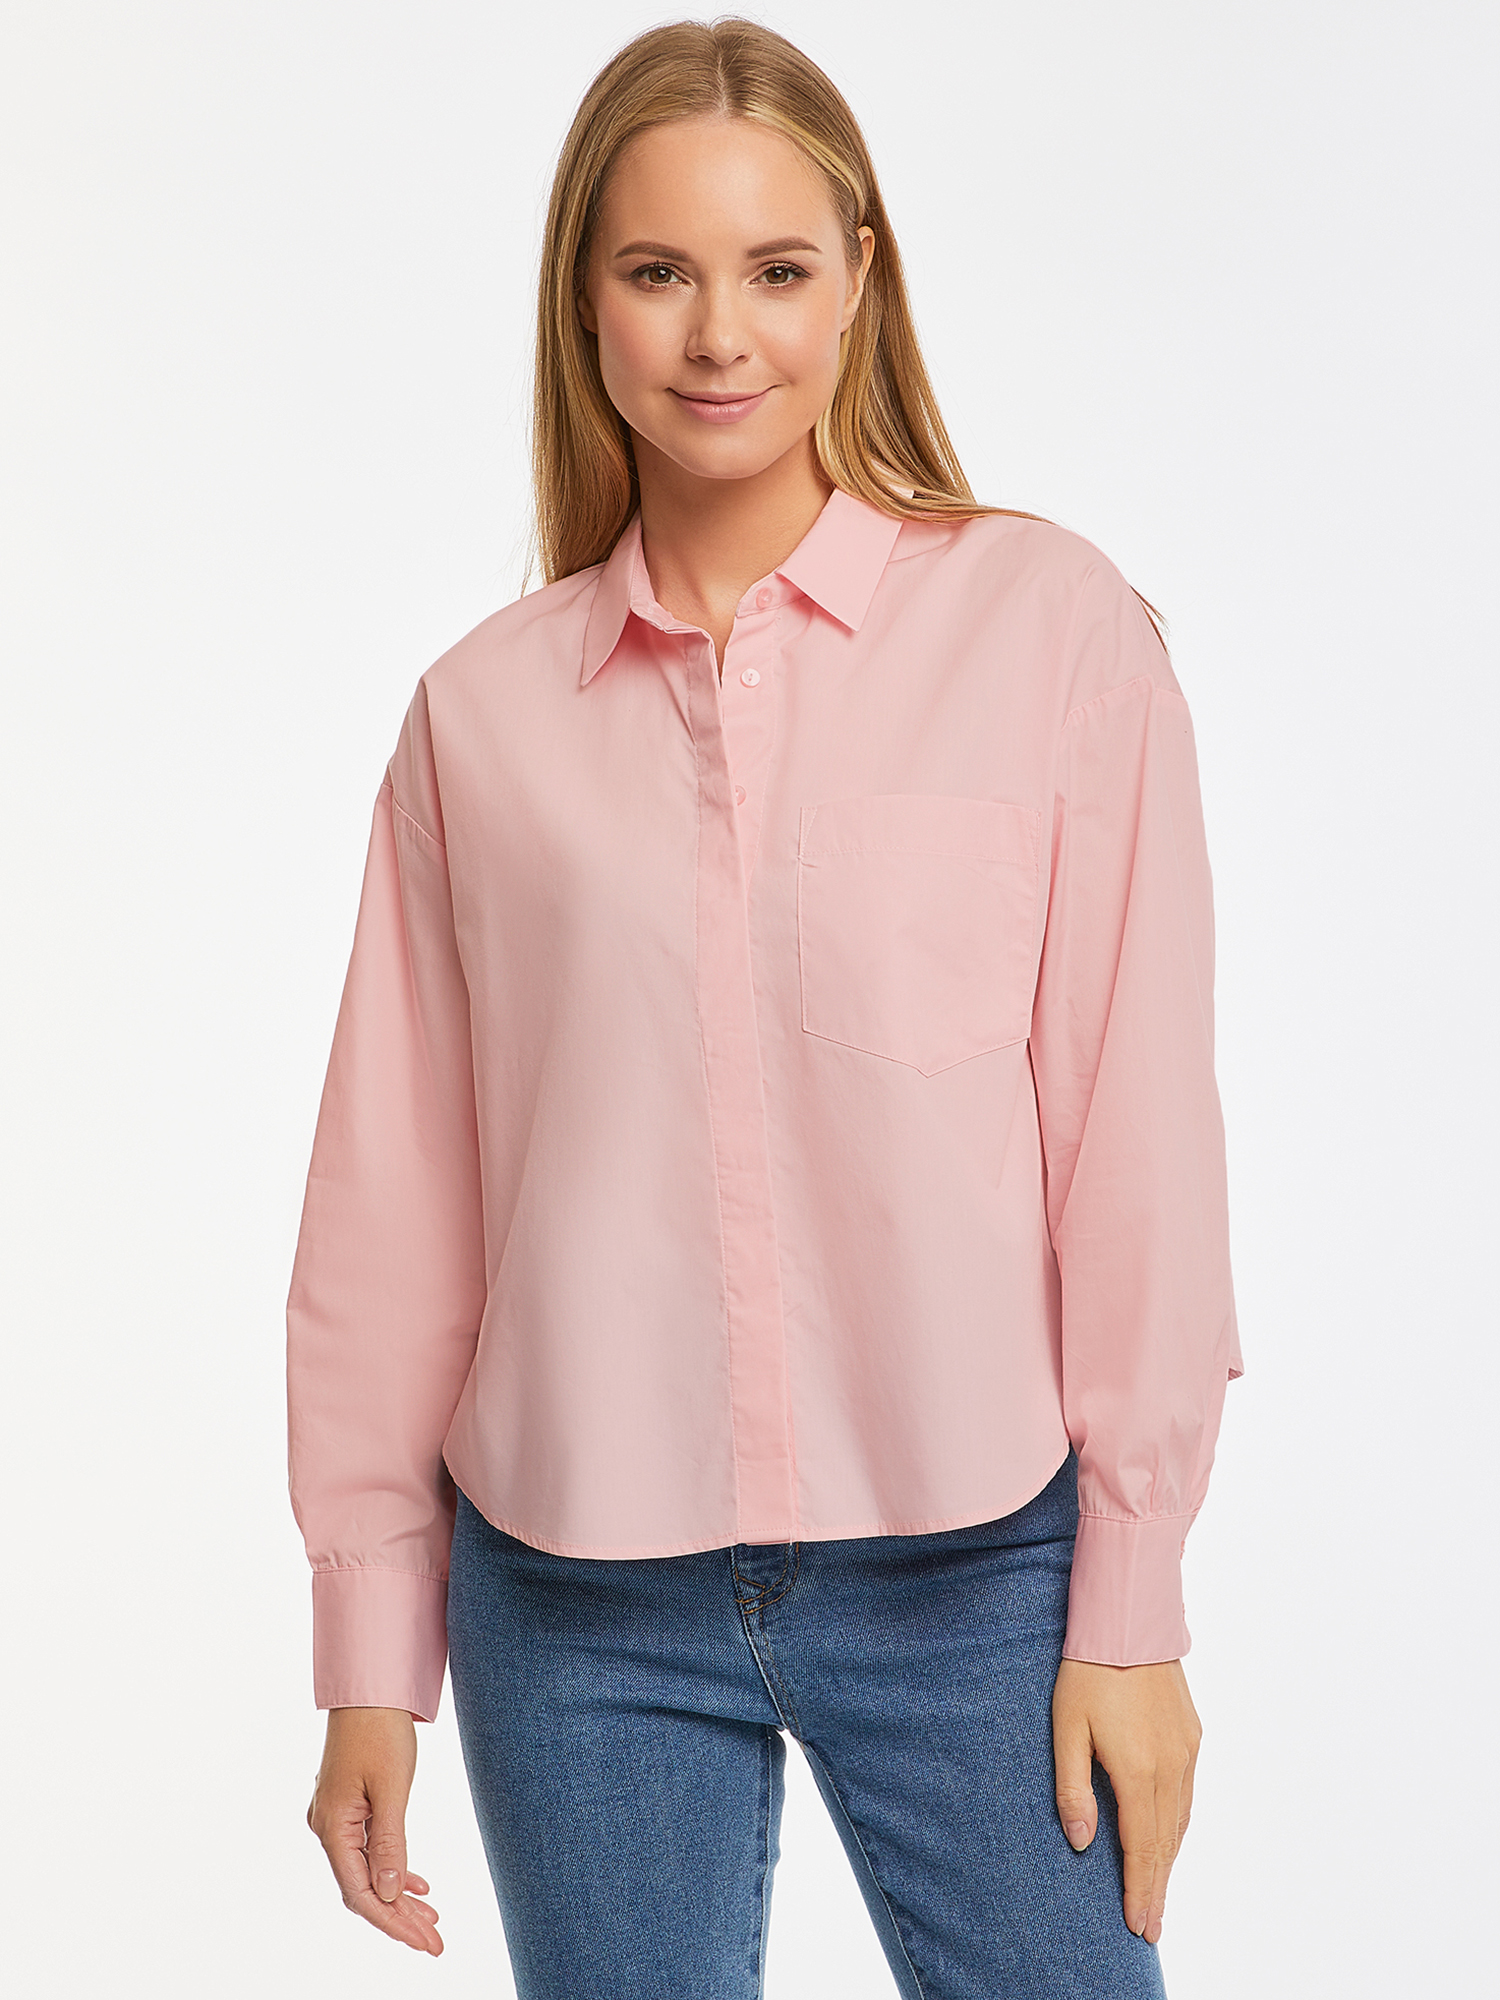 Рубашка женская oodji 13K11033-2 розовая 40